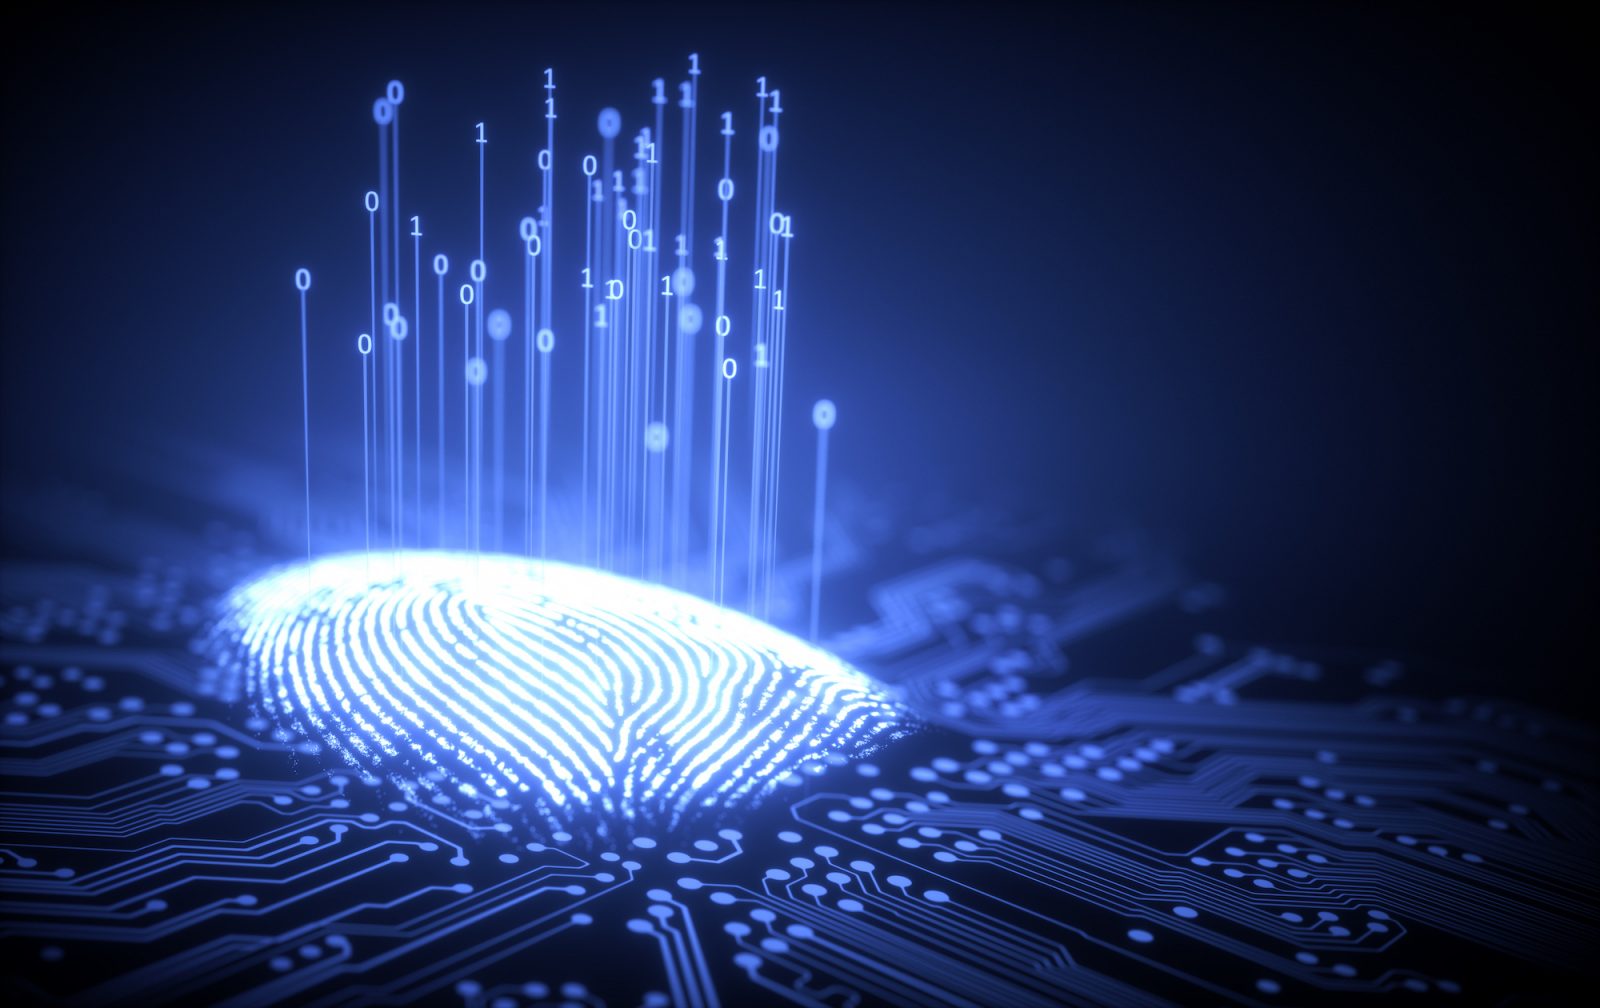 Background image: Data Fingerprint